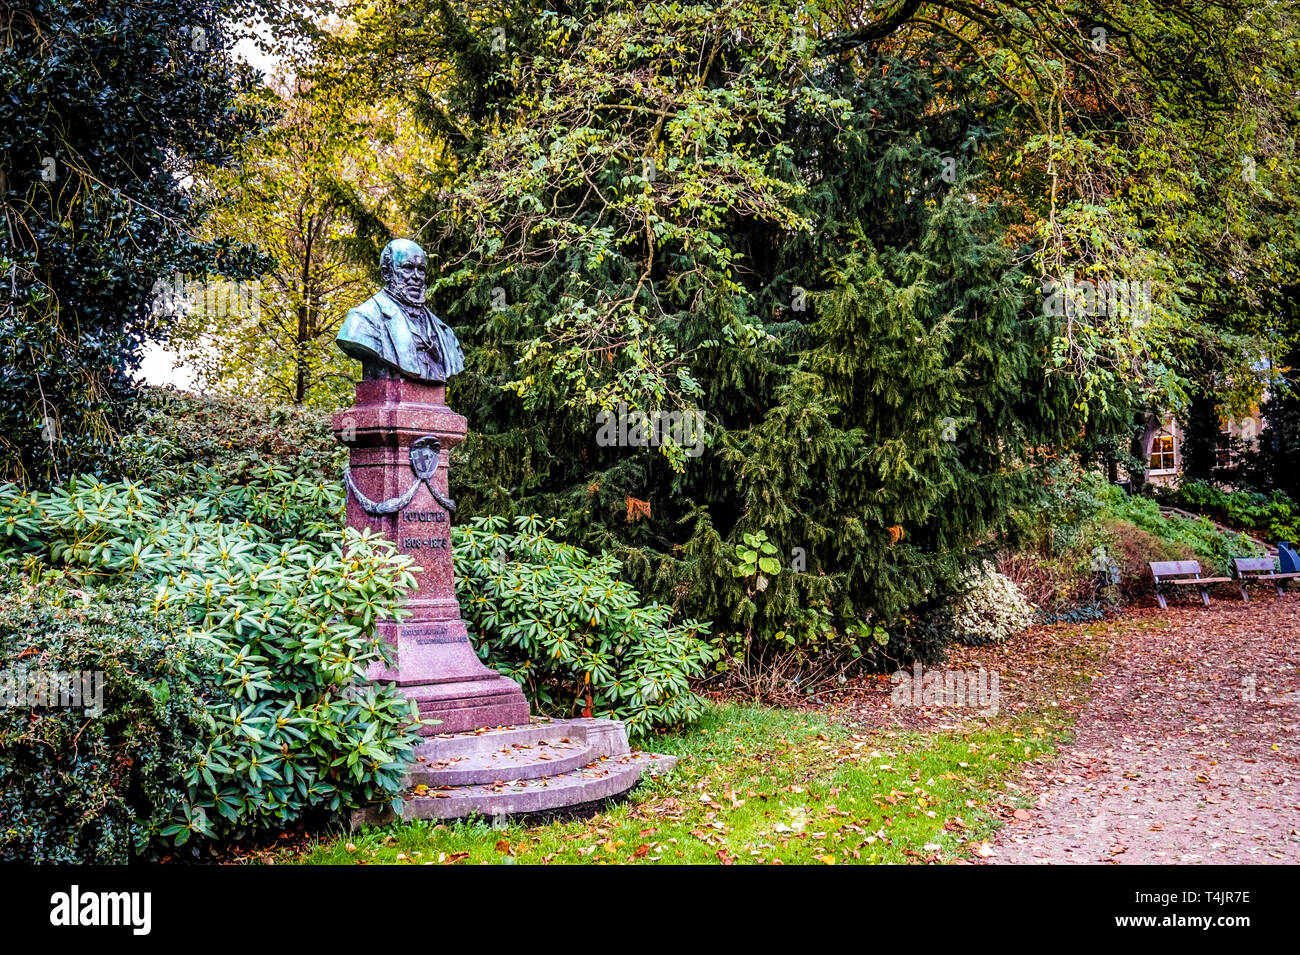 Statua di figura storica Potgieter in un parco lungo la riva del Stadsgracht nella storica città anseatica di Zwolle in Olanda Foto Stock